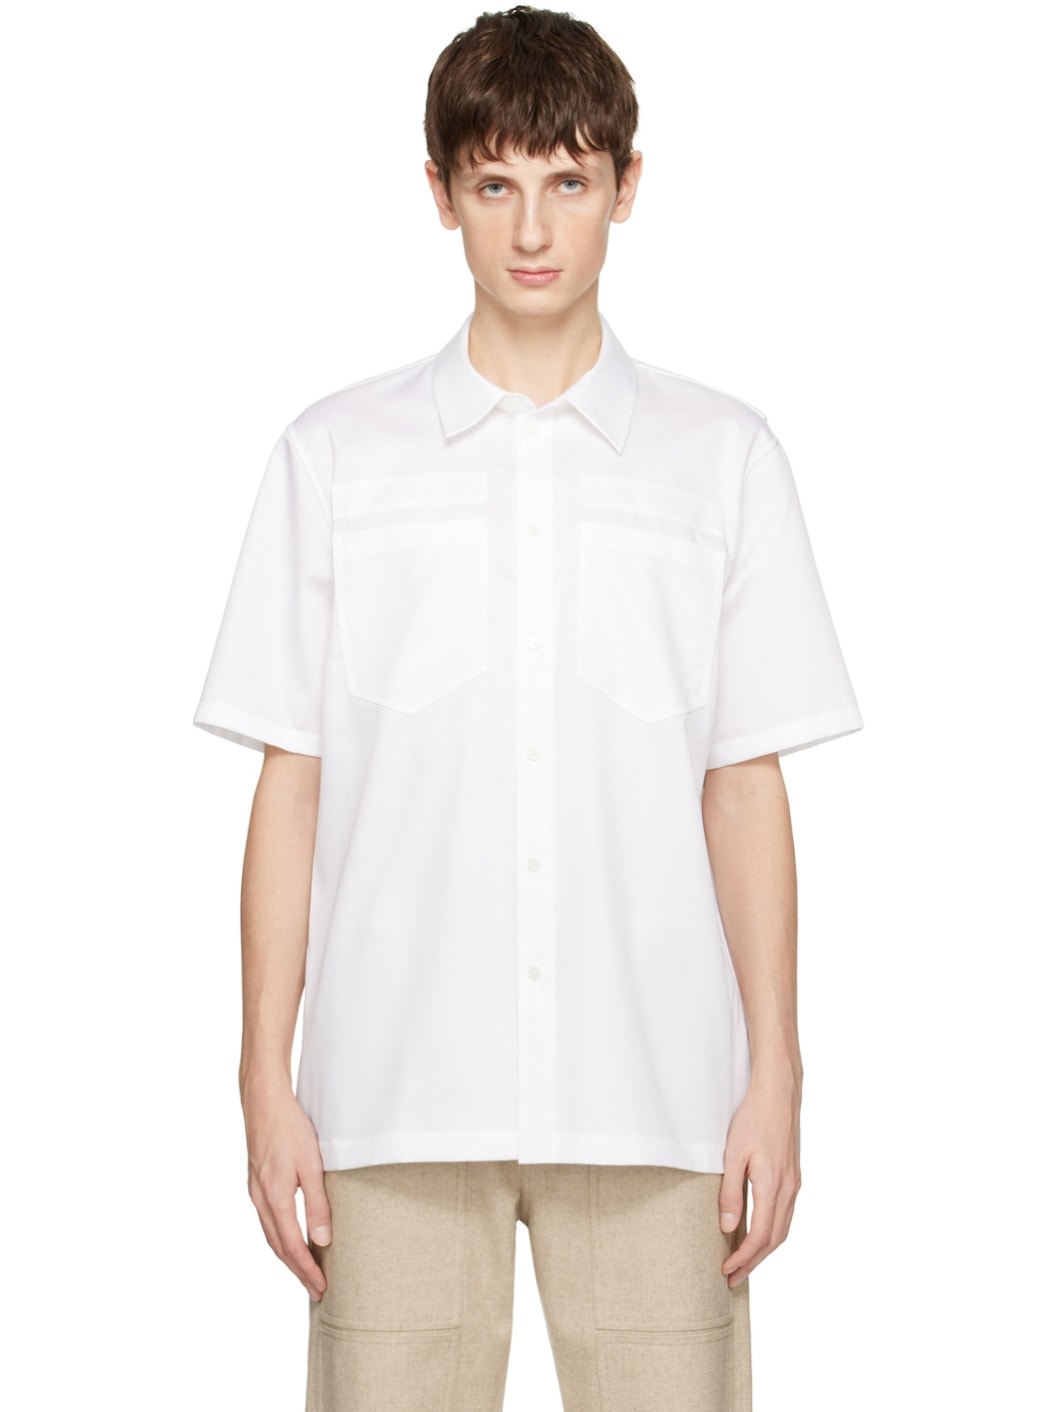 White Utility Shirt - 1